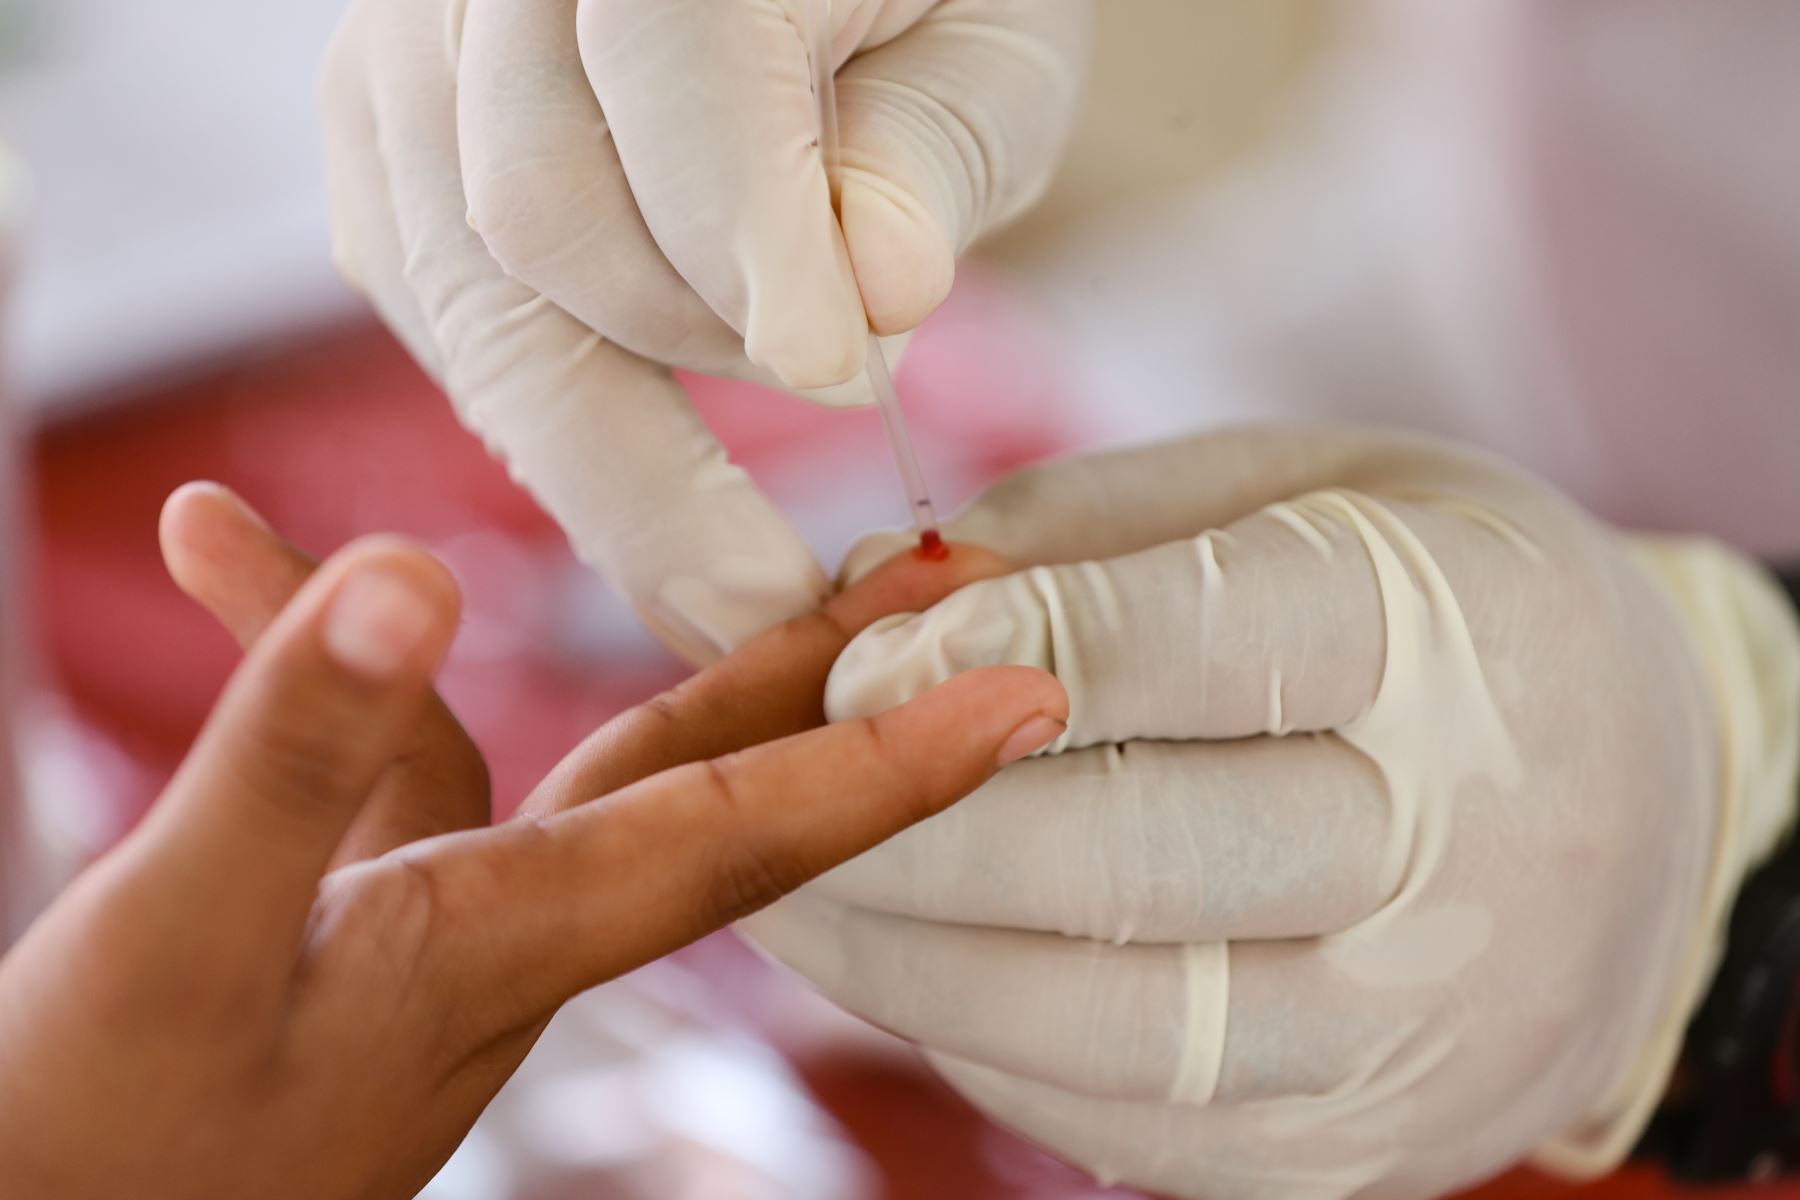 La provincia de Sullana recibirá un lote de 5,000 pruebas rápidas que servirá para evaluar el nivel de contagios de coronavirus. ANDINA/Difusión